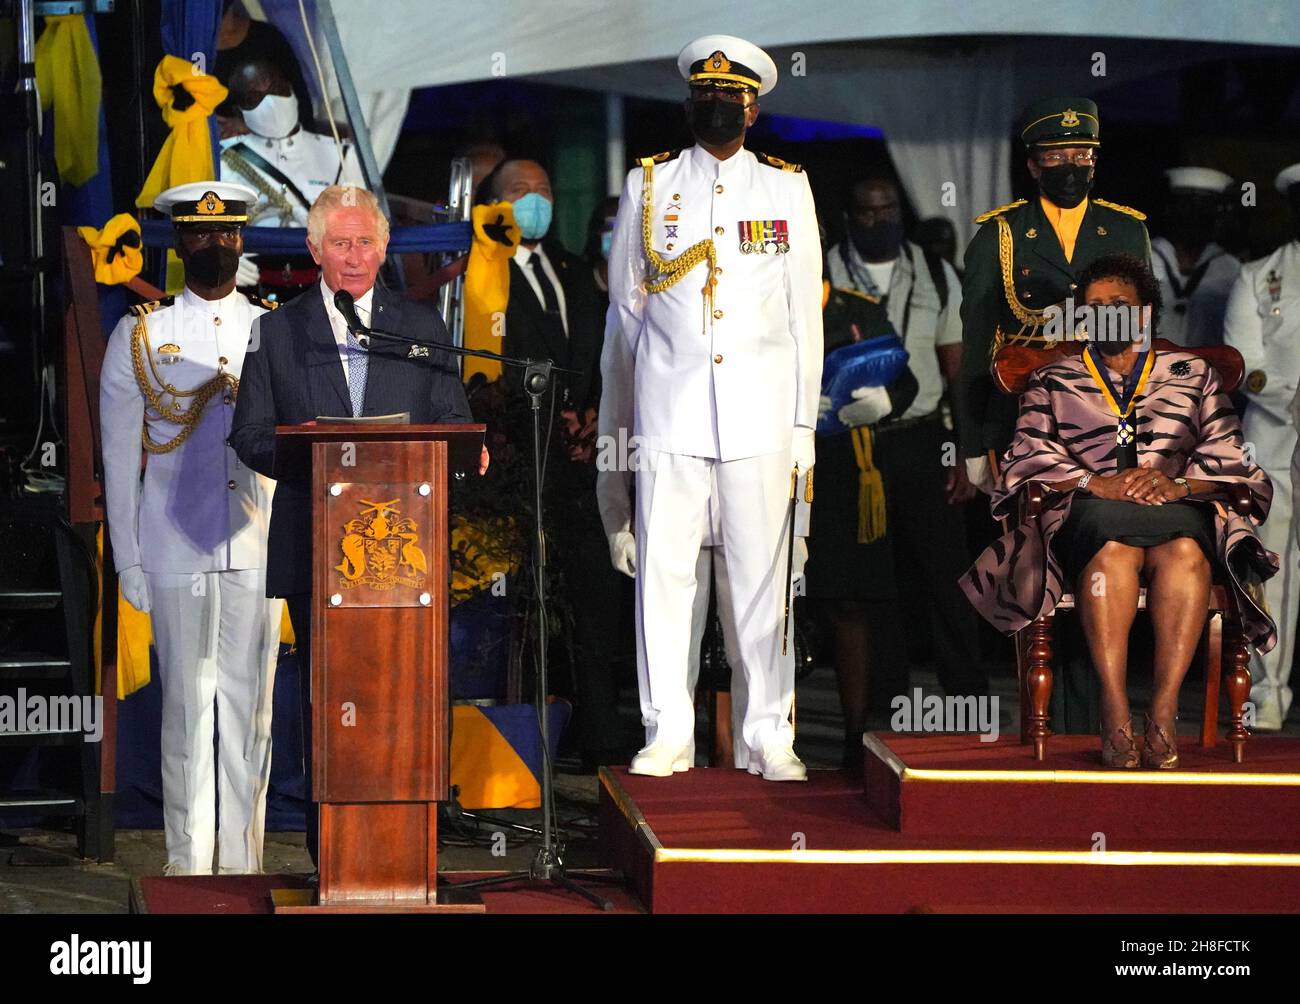 Der Prinz von Wales (links) hält eine Rede auf dem Heroes Square in Bridgetown Barbados im Anschluss an eine Zeremonie anlässlich des Übergangs des Landes zu einer republik innerhalb des Commonwealth. Bilddatum: Dienstag, 30. November 2021. Stockfoto